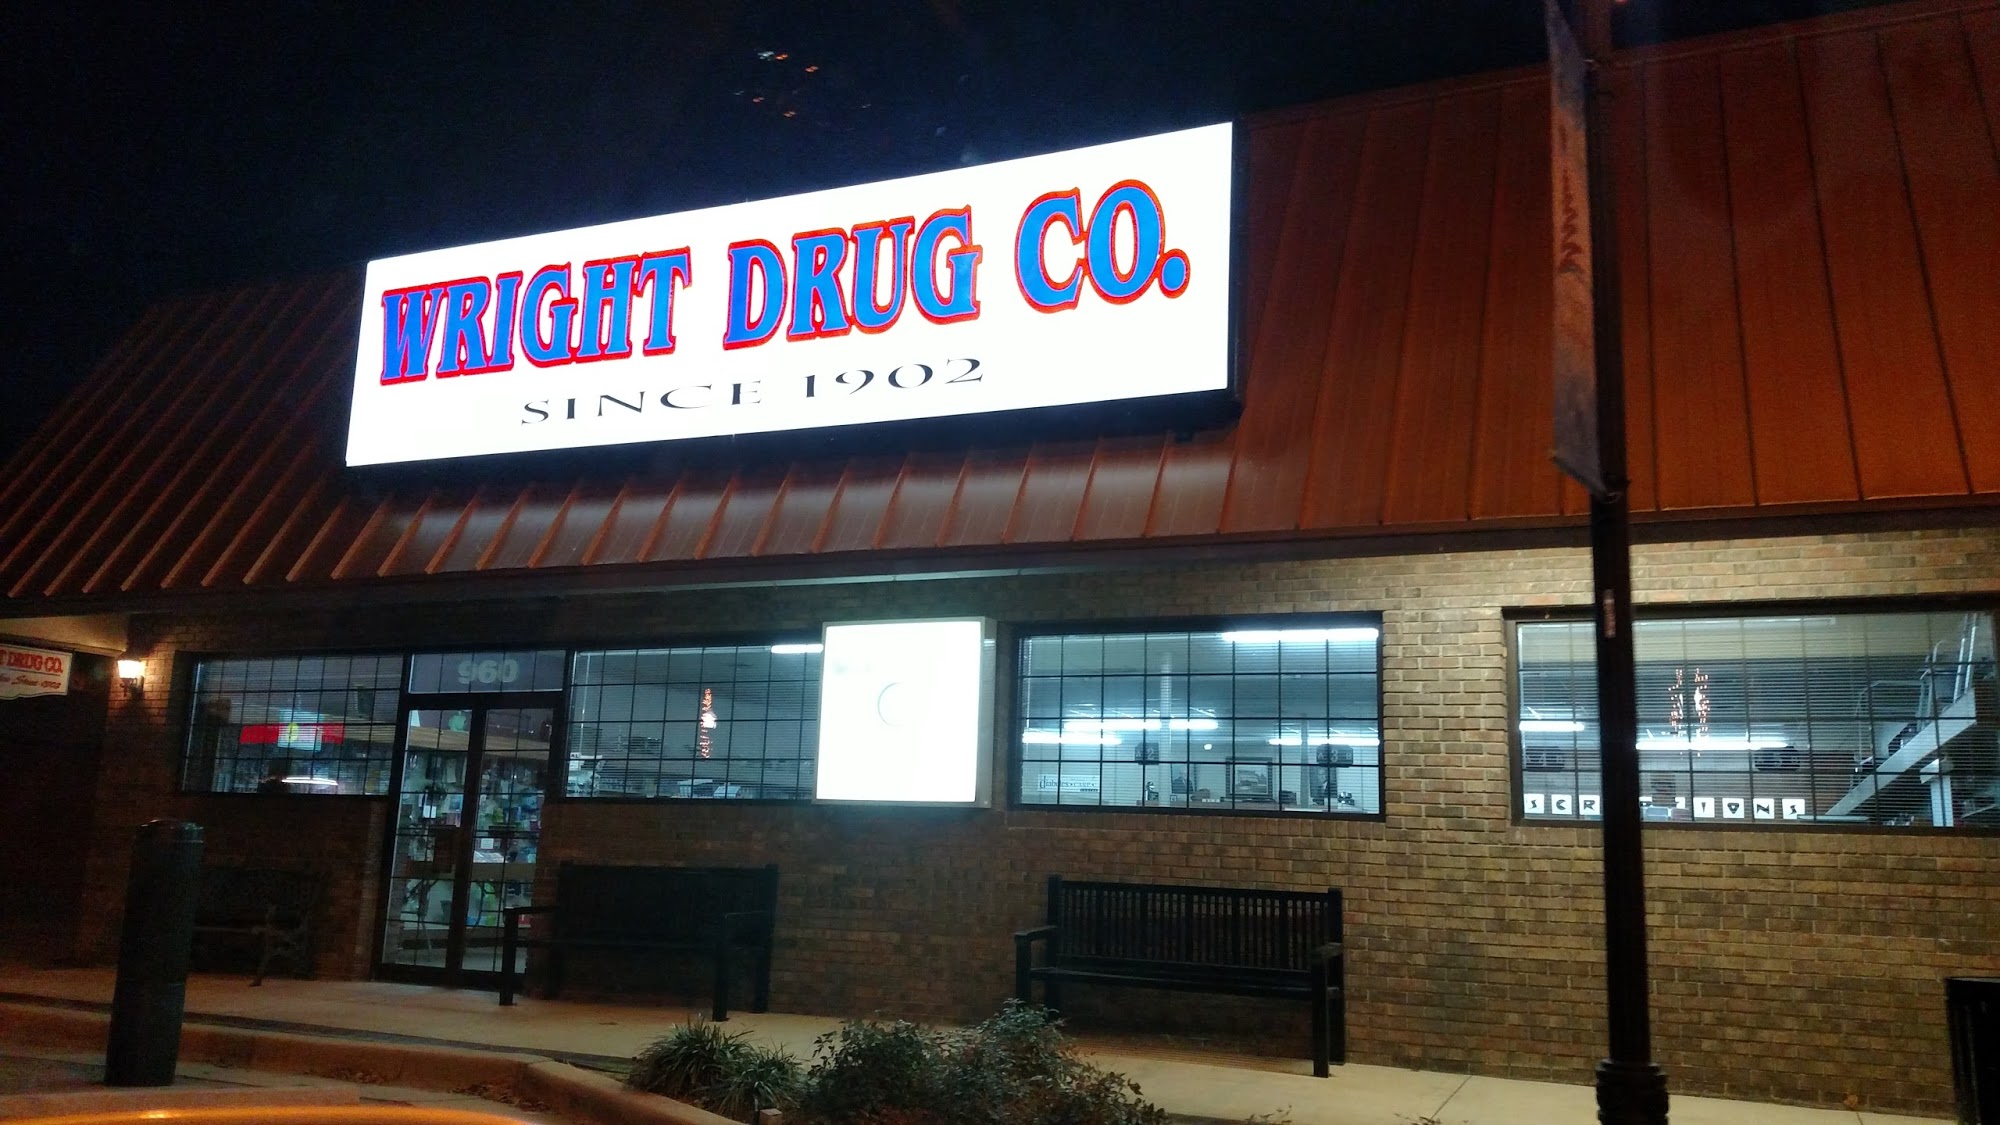 Wright Drug Company